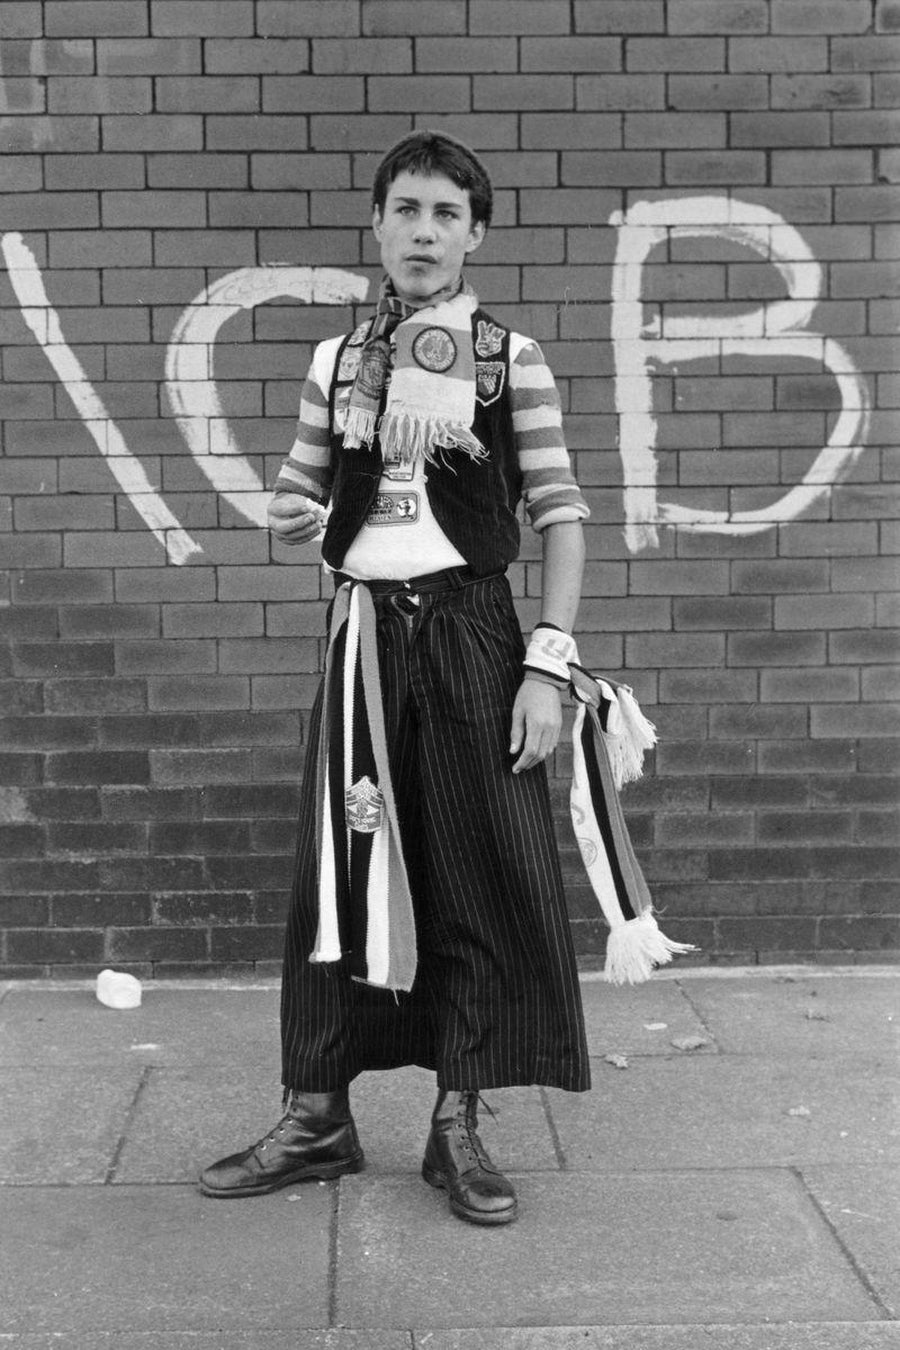 ¿Falda o pantalón? Aficionado del Manchester United vestido para el partido por Iain SP Reid, c. 1977.